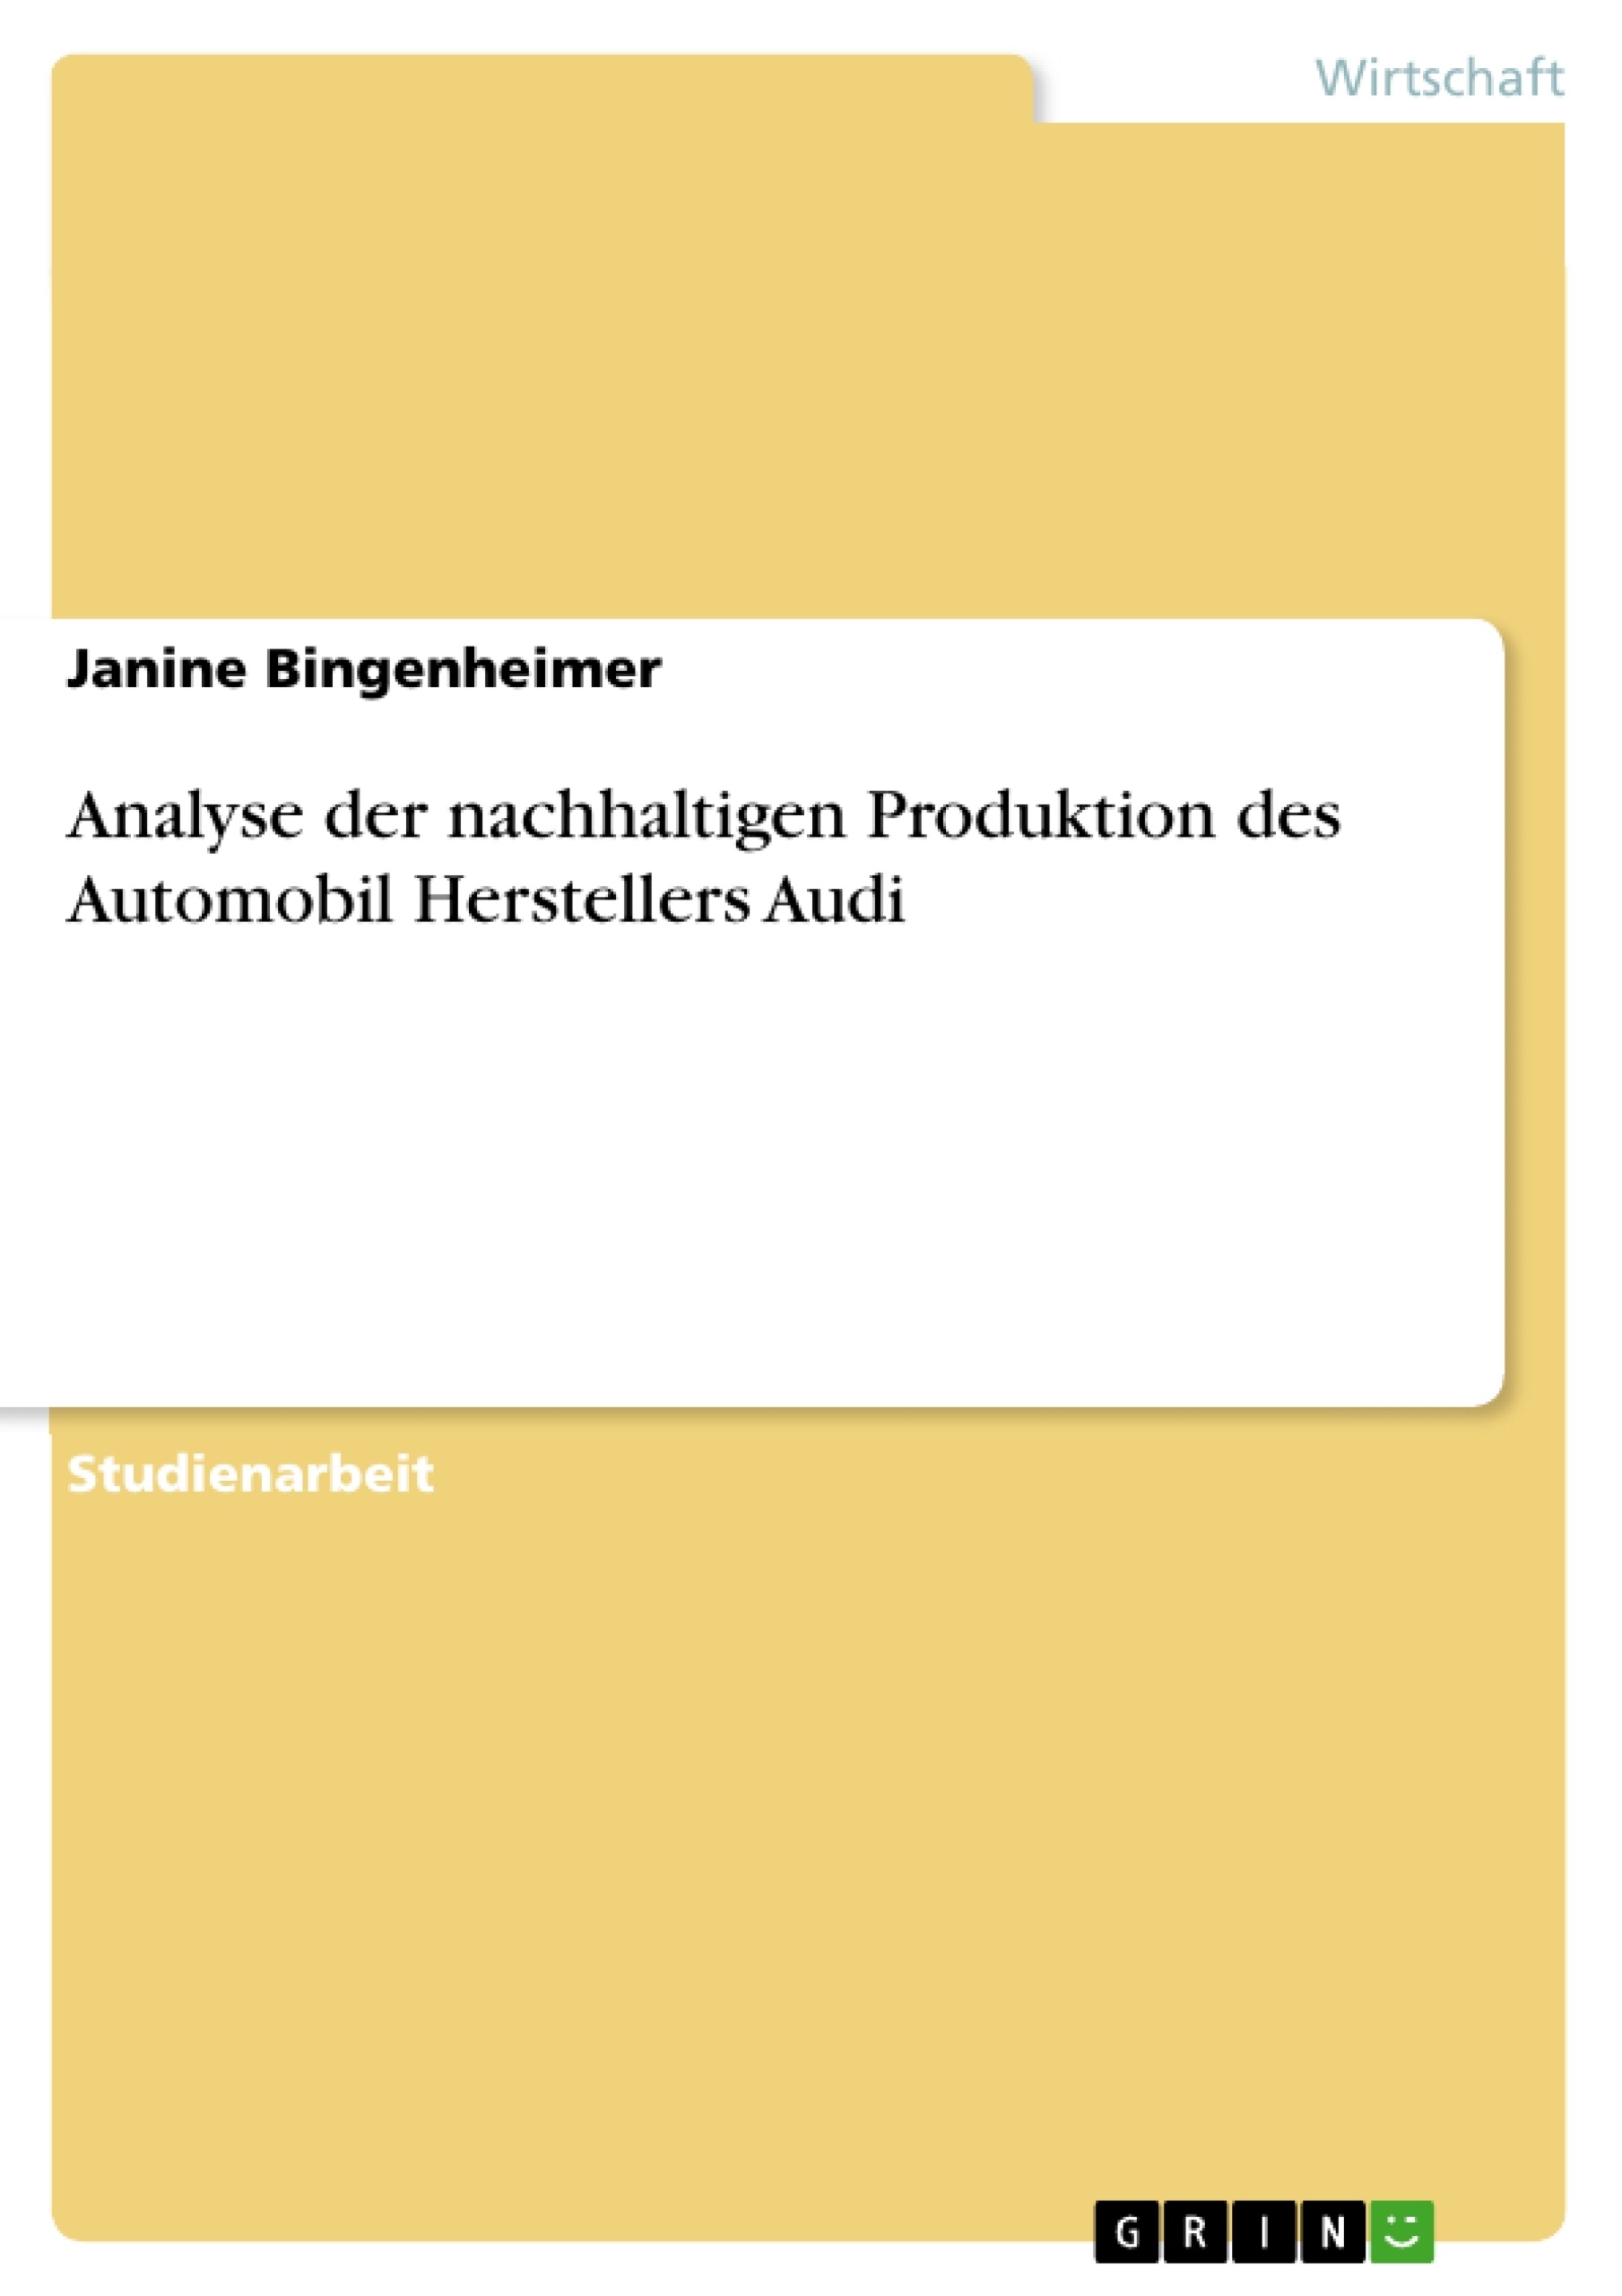 Título: Analyse der nachhaltigen Produktion des Automobil Herstellers Audi